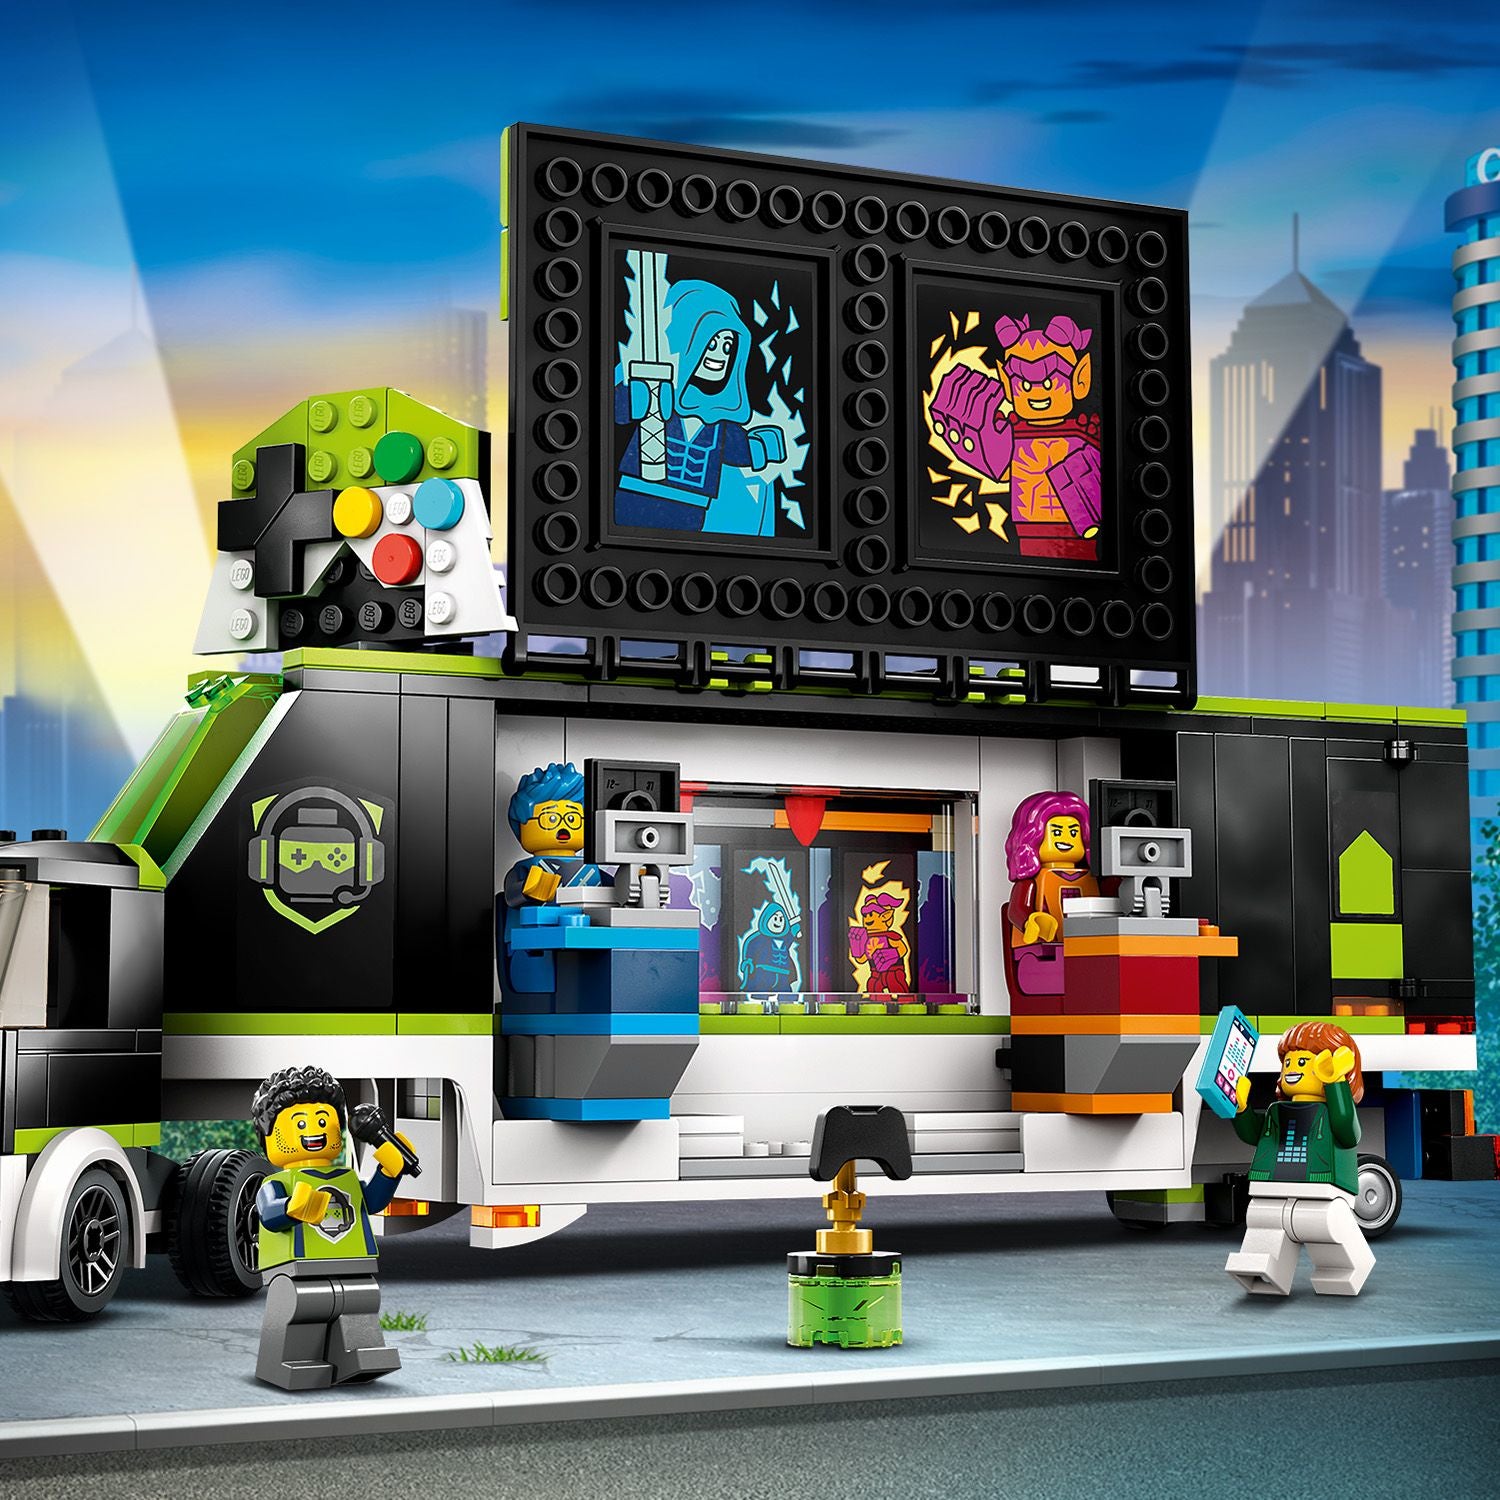 60388 LEGO City - Camion dei tornei di gioco